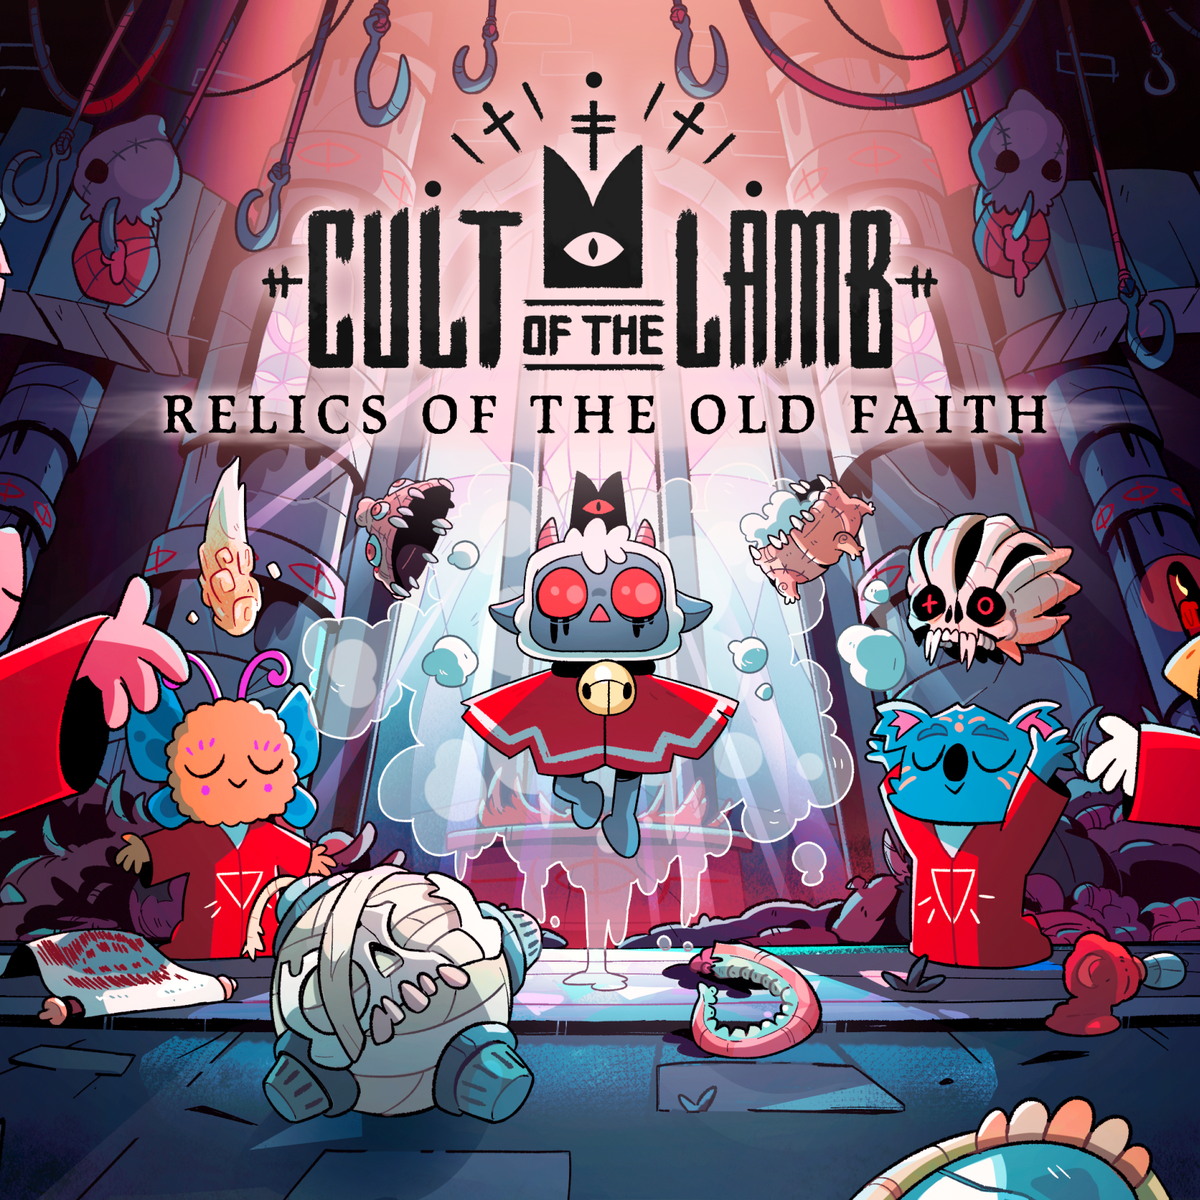 Cult of the Lamb receberá atualização gratuita em 24 de abril